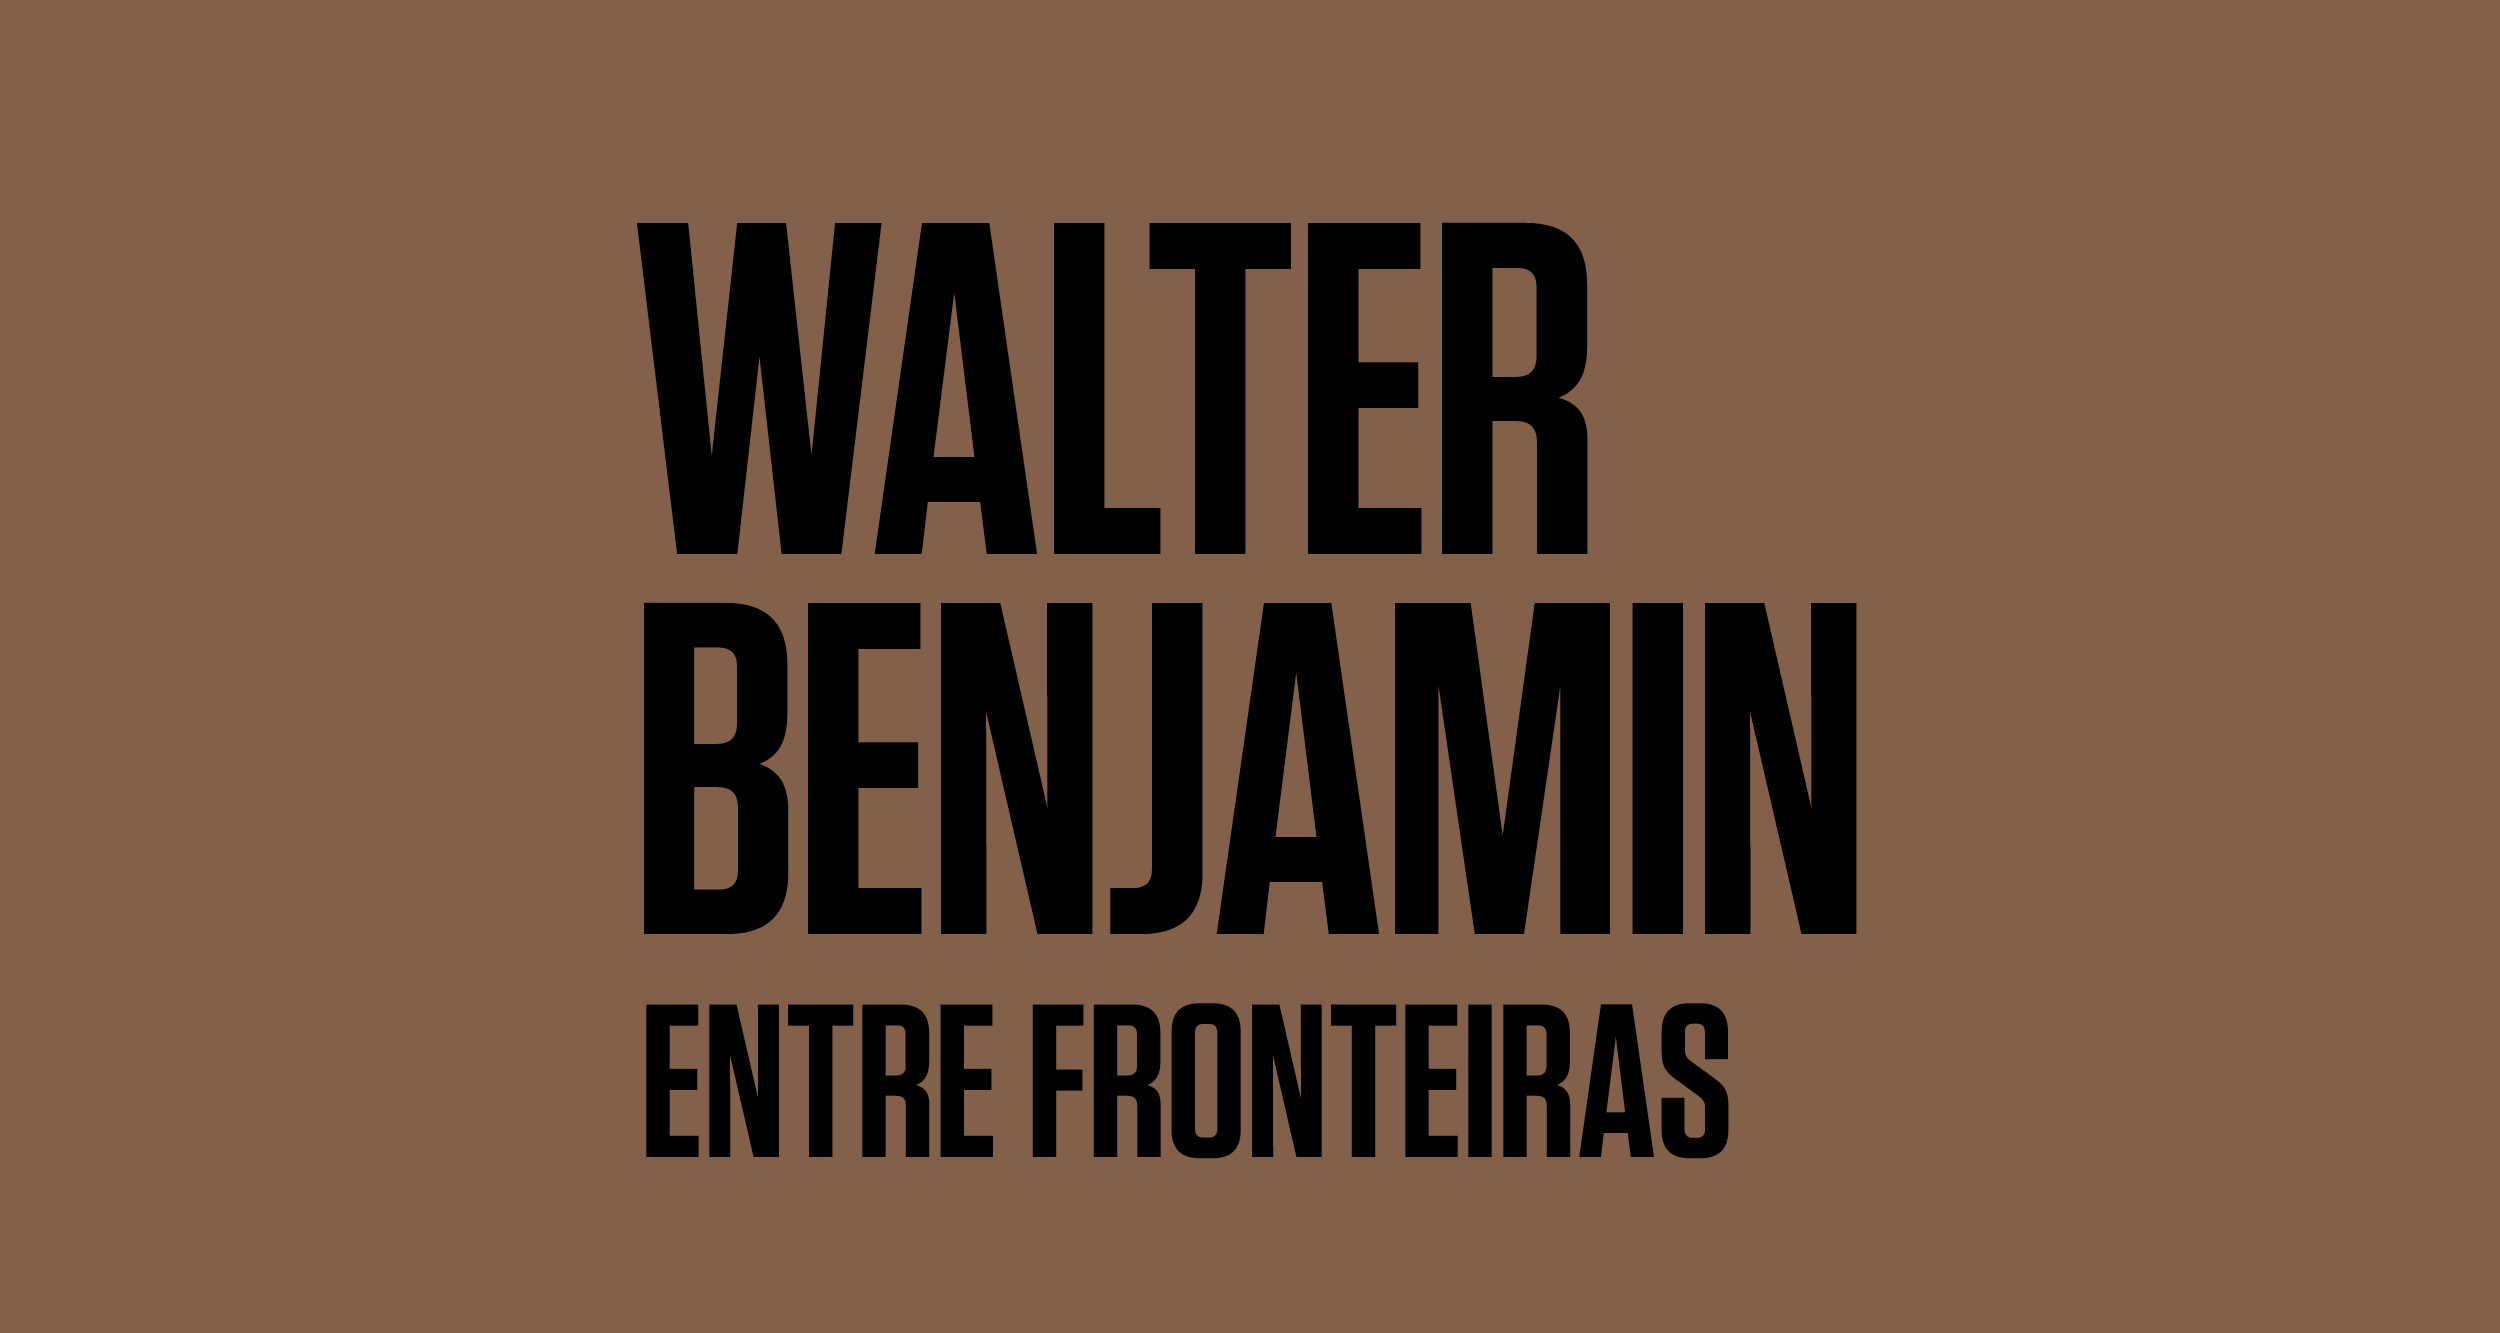 Walter Benjamin entre fronteiras